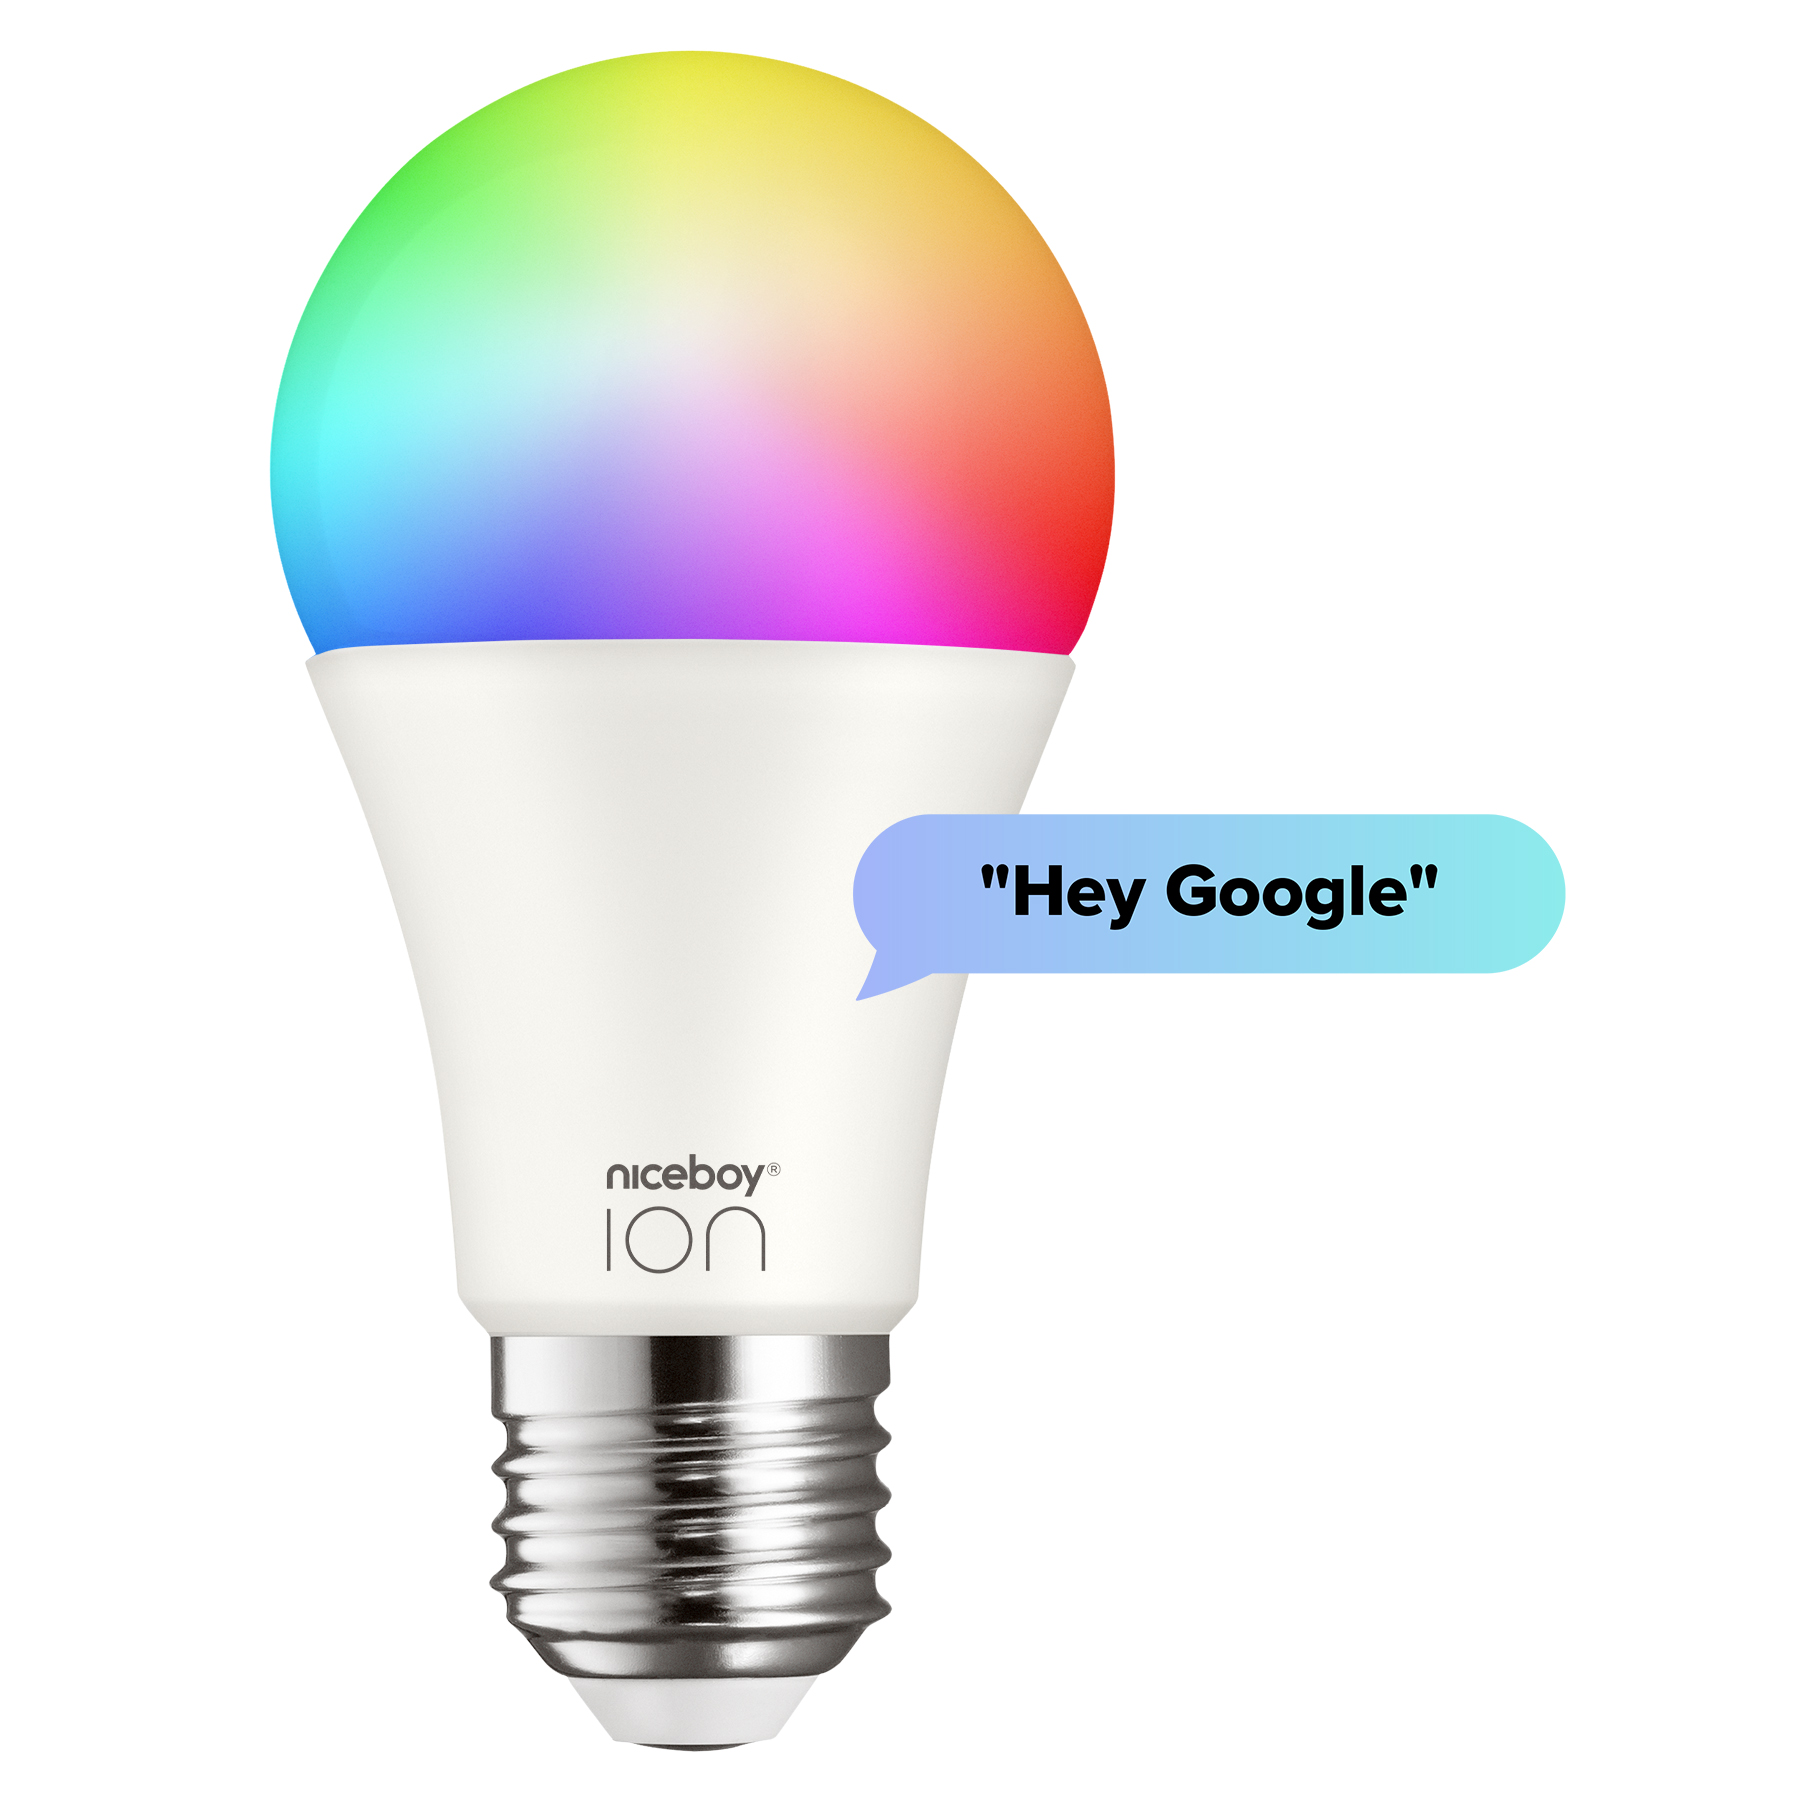 K inteligentní správě žárovky Niceboy ION SmartBulb RGB můžete využít také hlasového asistenta Google Assistant, takže vás bude poslouchat na slovo.